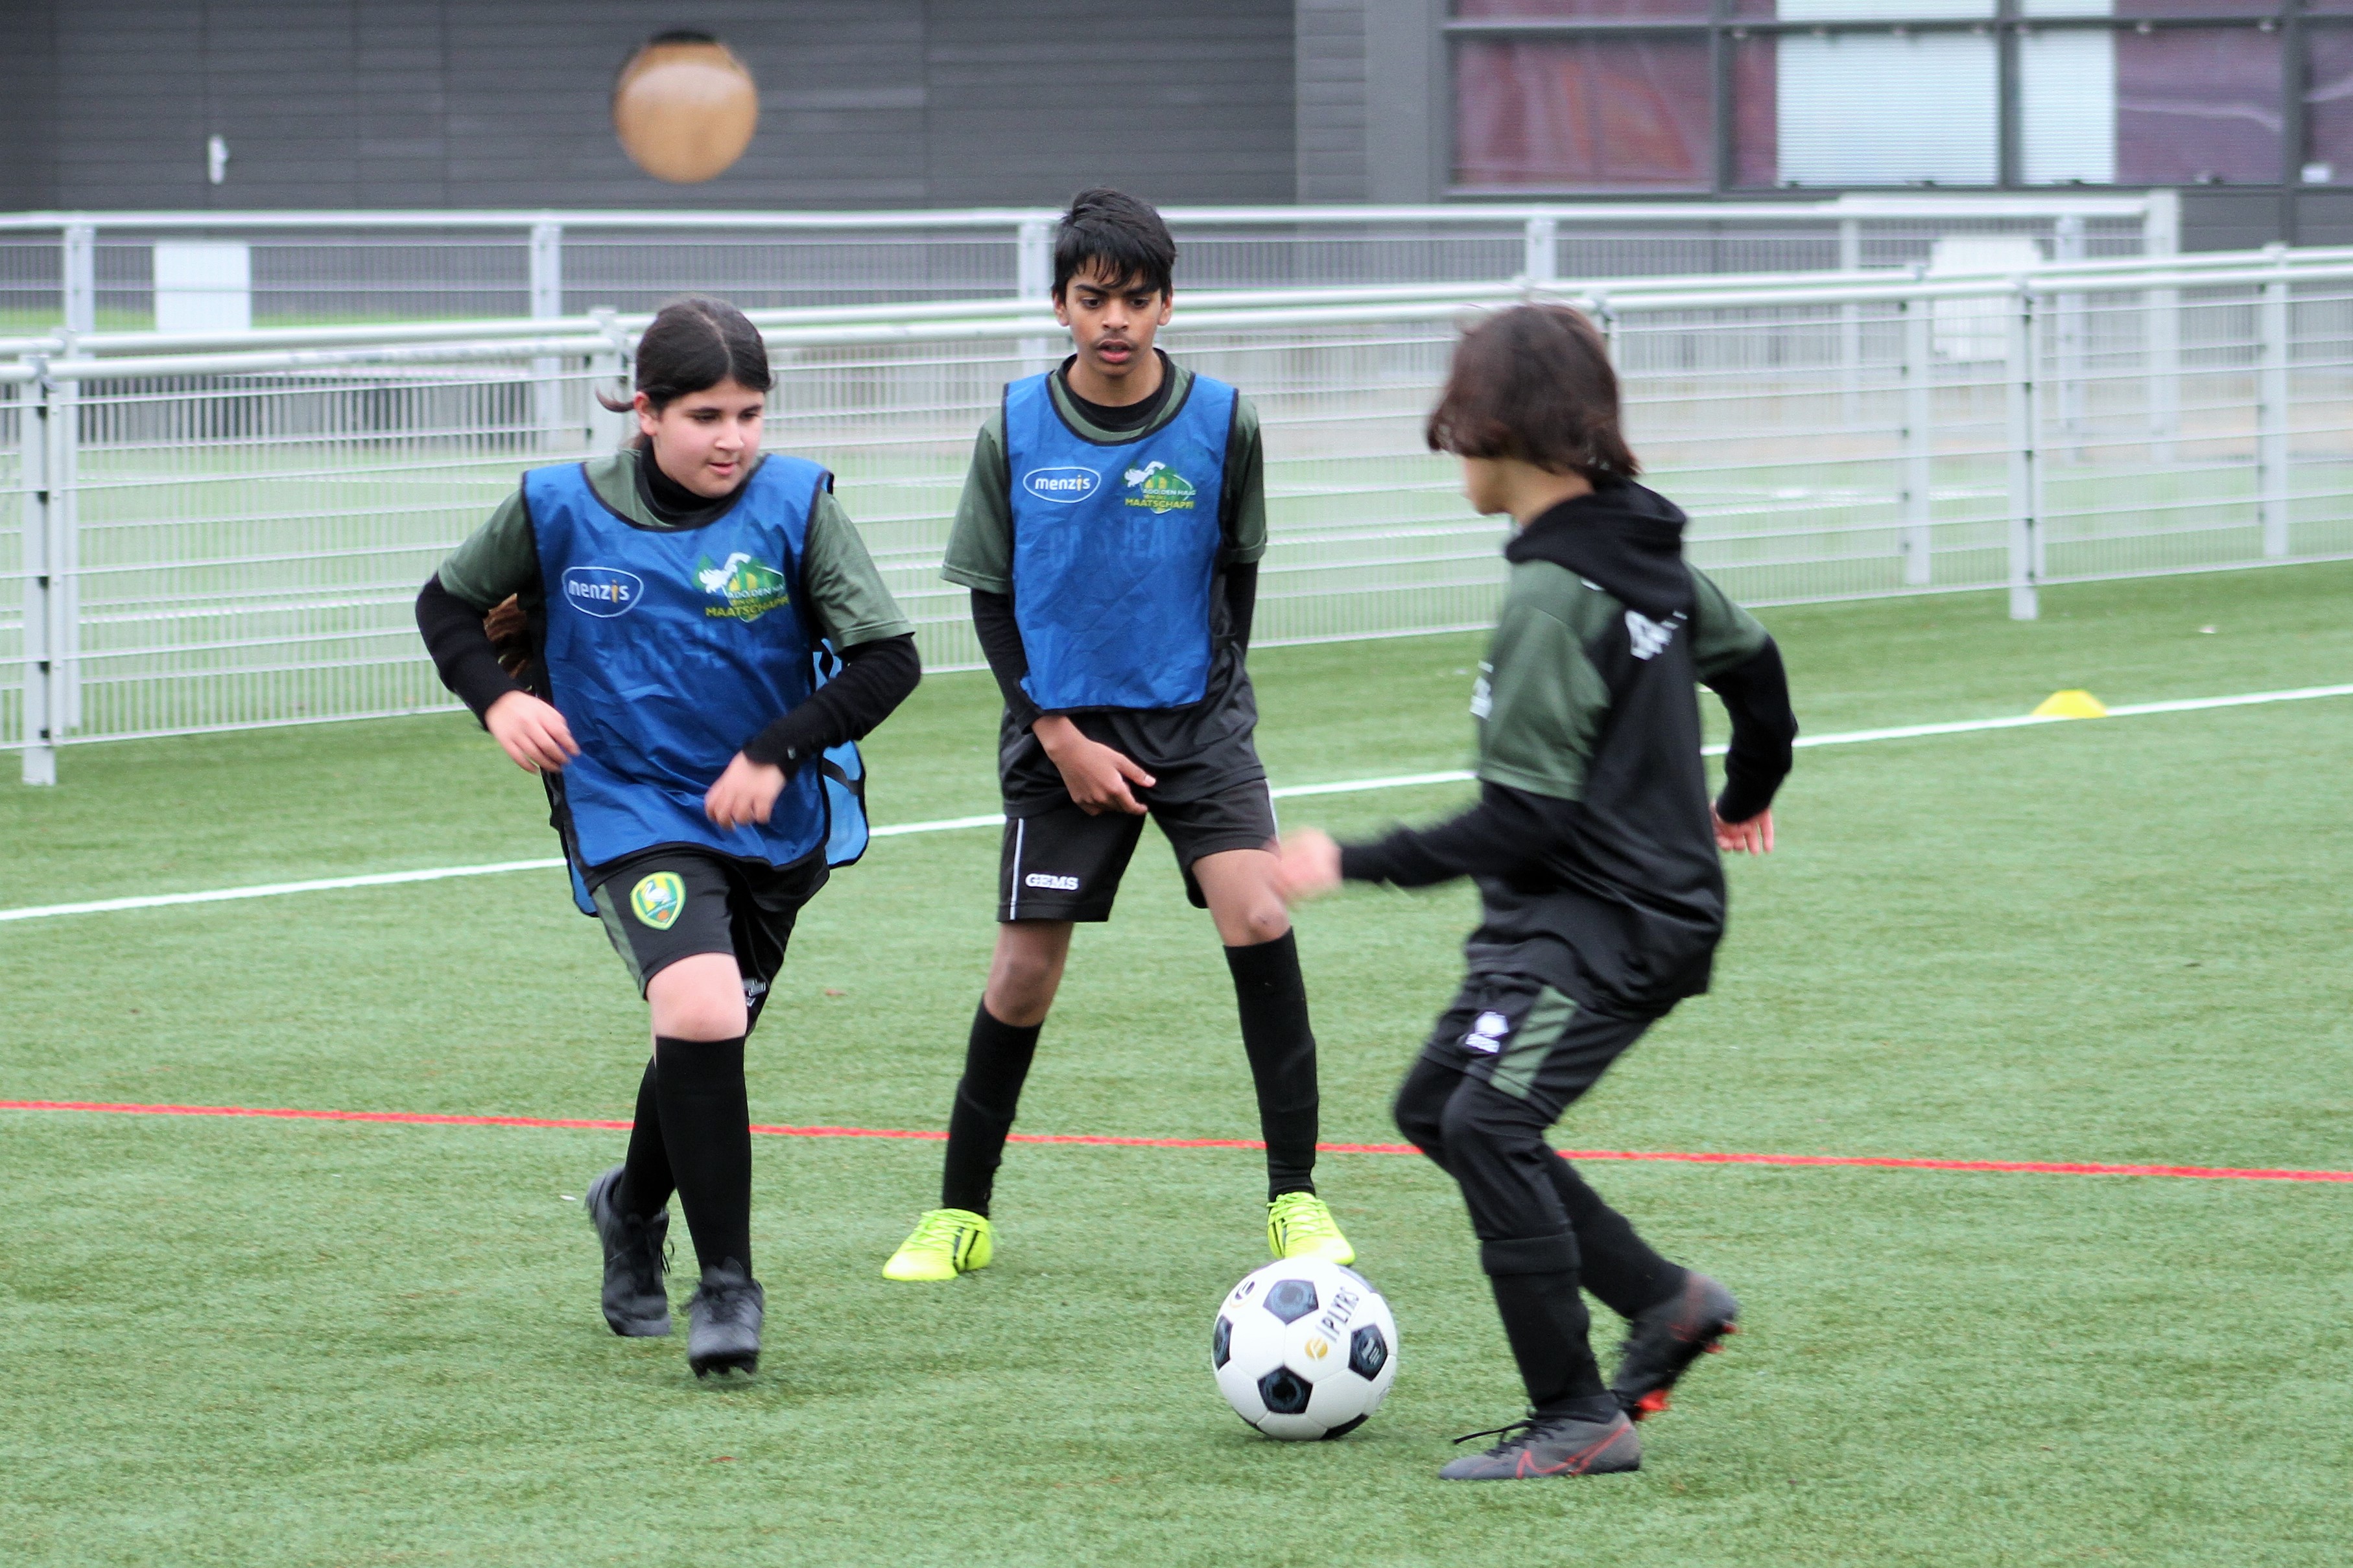 Echter staan patrouille Alya (12) leert te leven als een echte ADO-Prof!: "Naast dat je beter wordt  in voetbal leer je voor jezelf opkomen" - ADO Den Haag